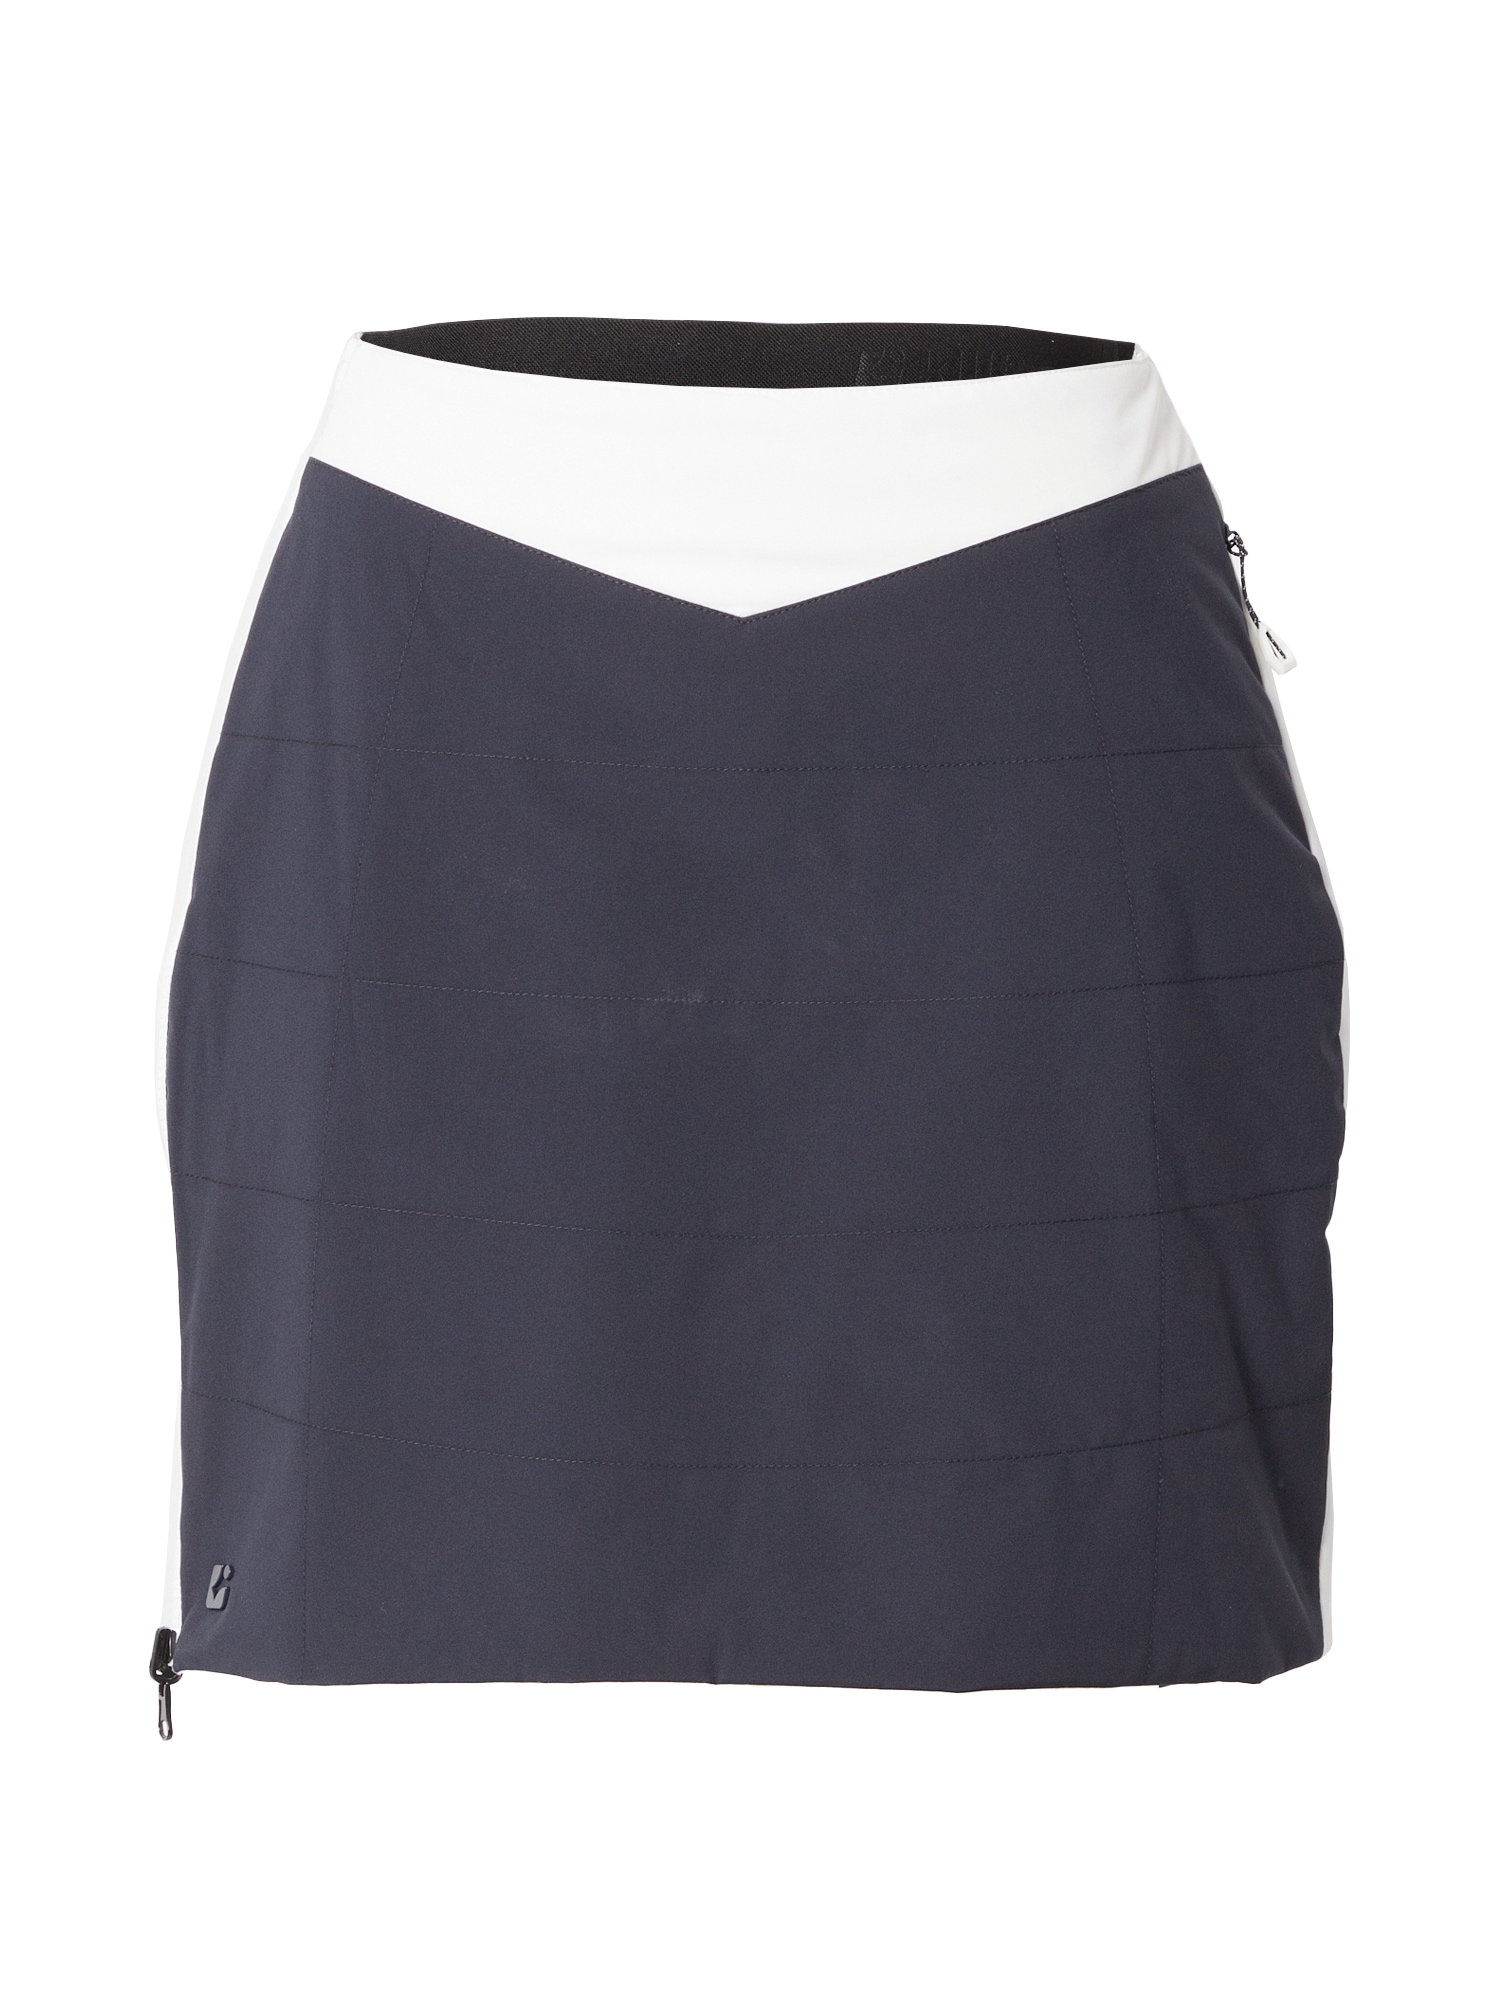 KILLTEC Sportinio stiliaus sijonas tamsiai mėlyna jūros spalva / balta